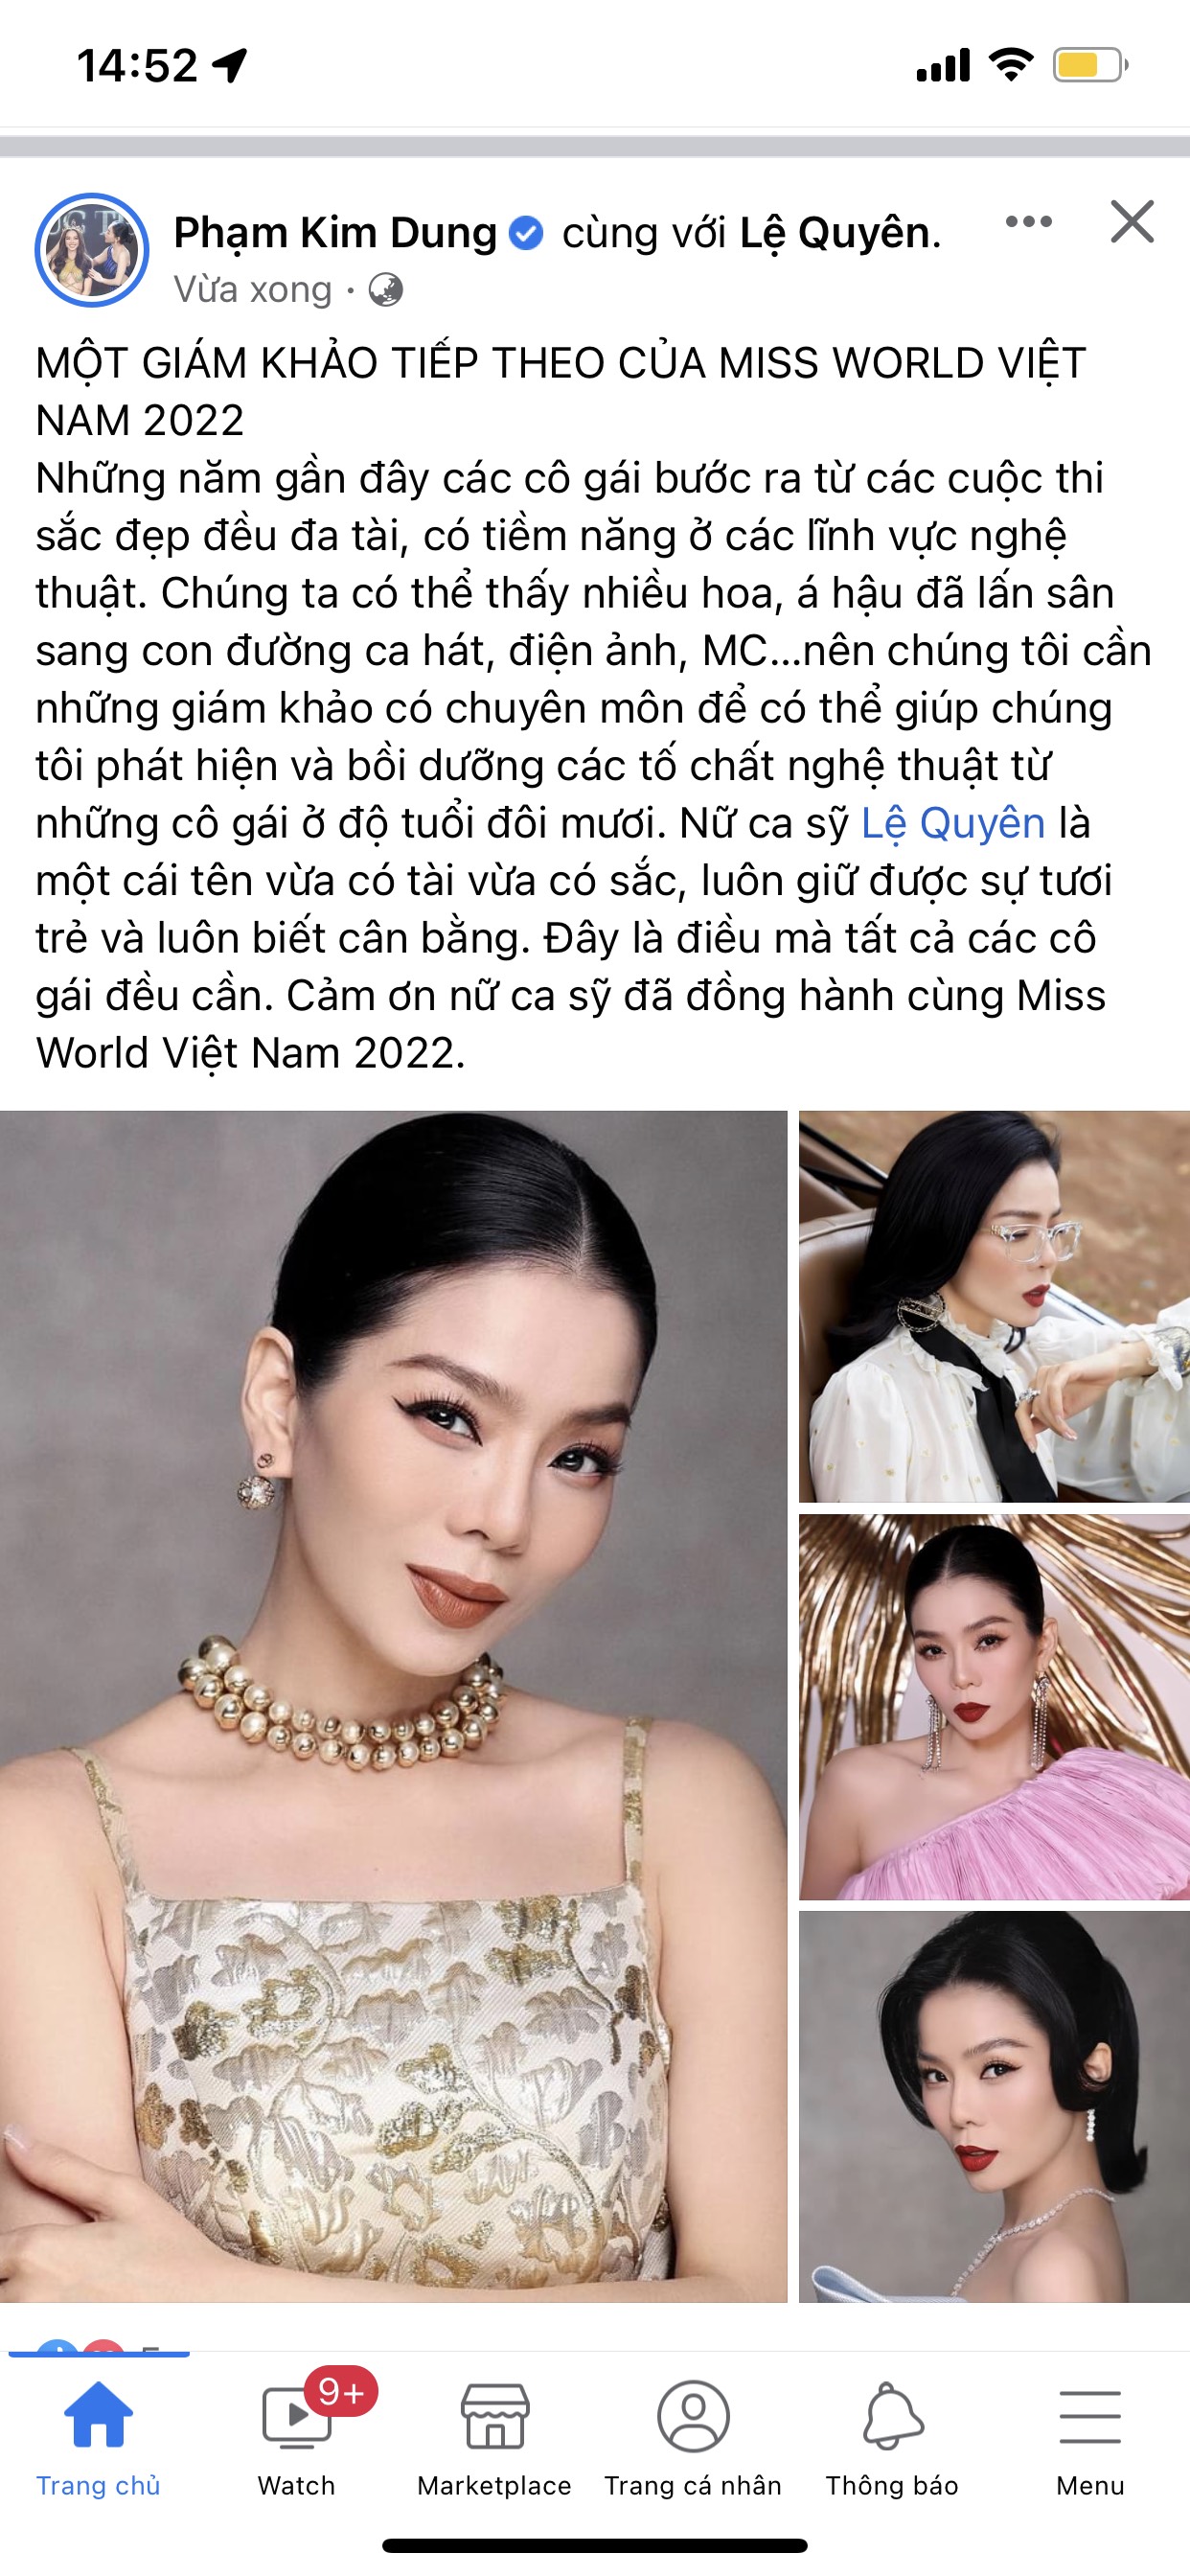 Bài viết mới đây được bà Phạm Kim Dung đăng tải khiến nhiều người chú ý